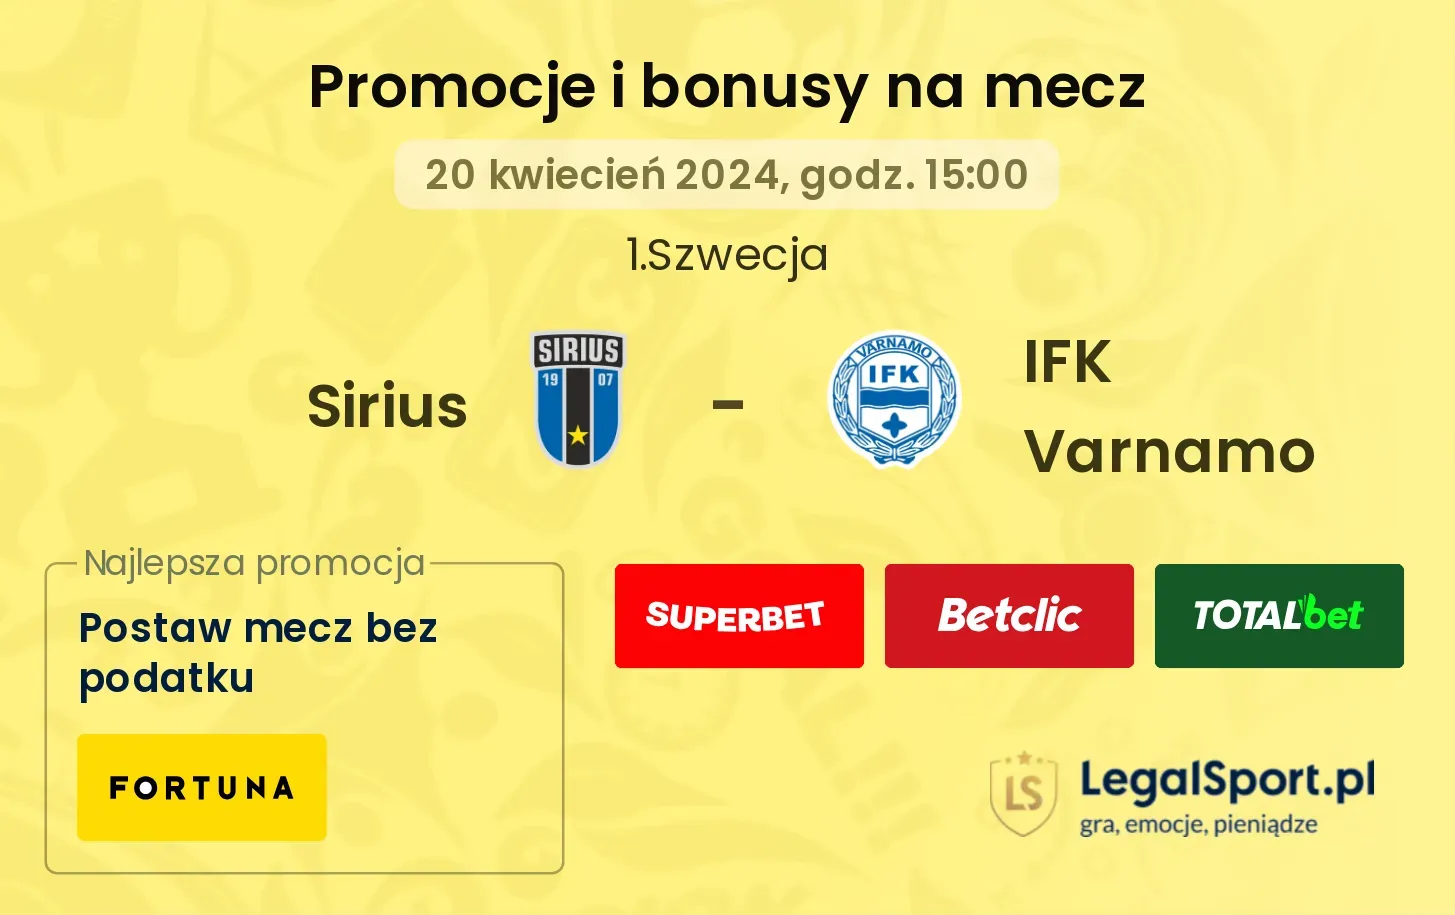 Sirius - IFK Varnamo promocje bonusy na mecz